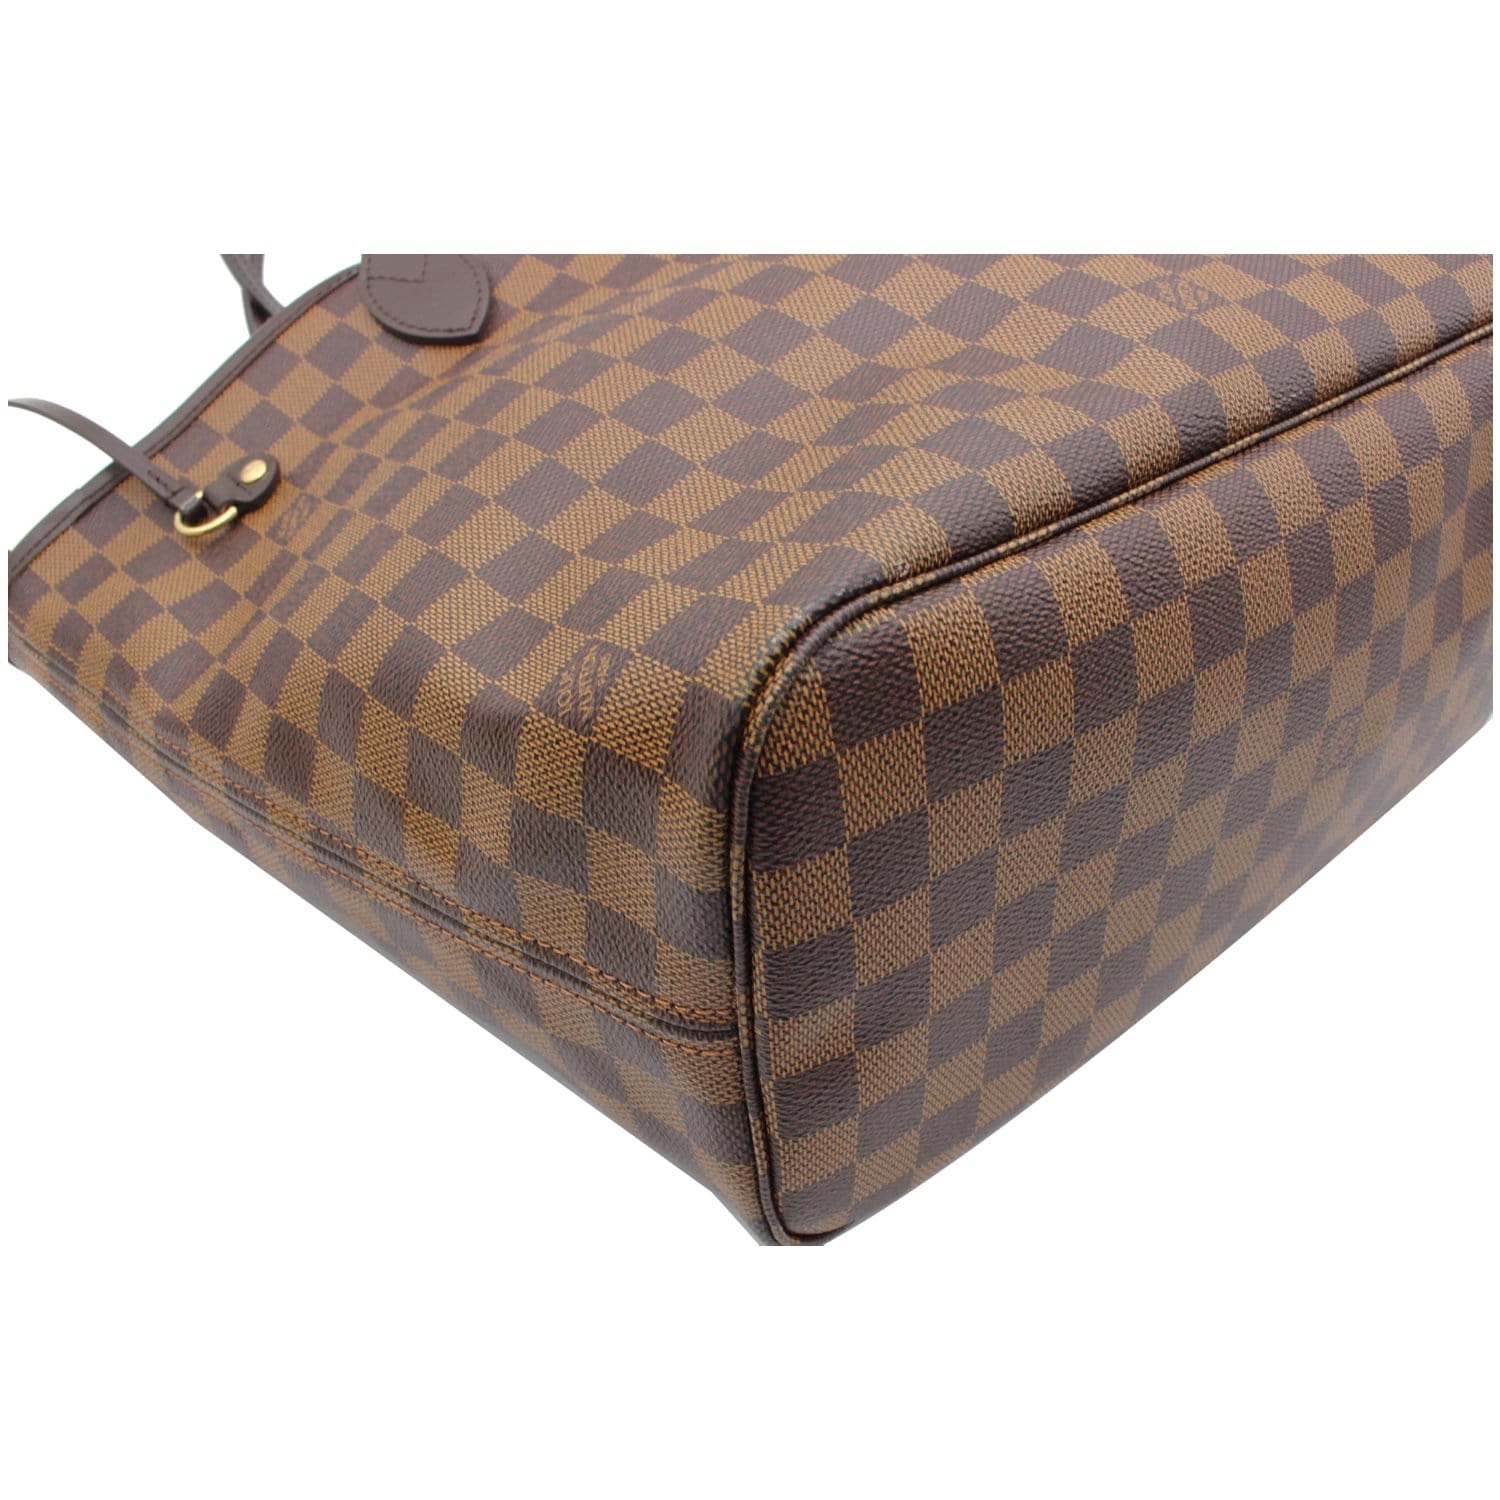 Louis Vuitton, Bags, Sold Lv Neverfull Mm Damier Ebene